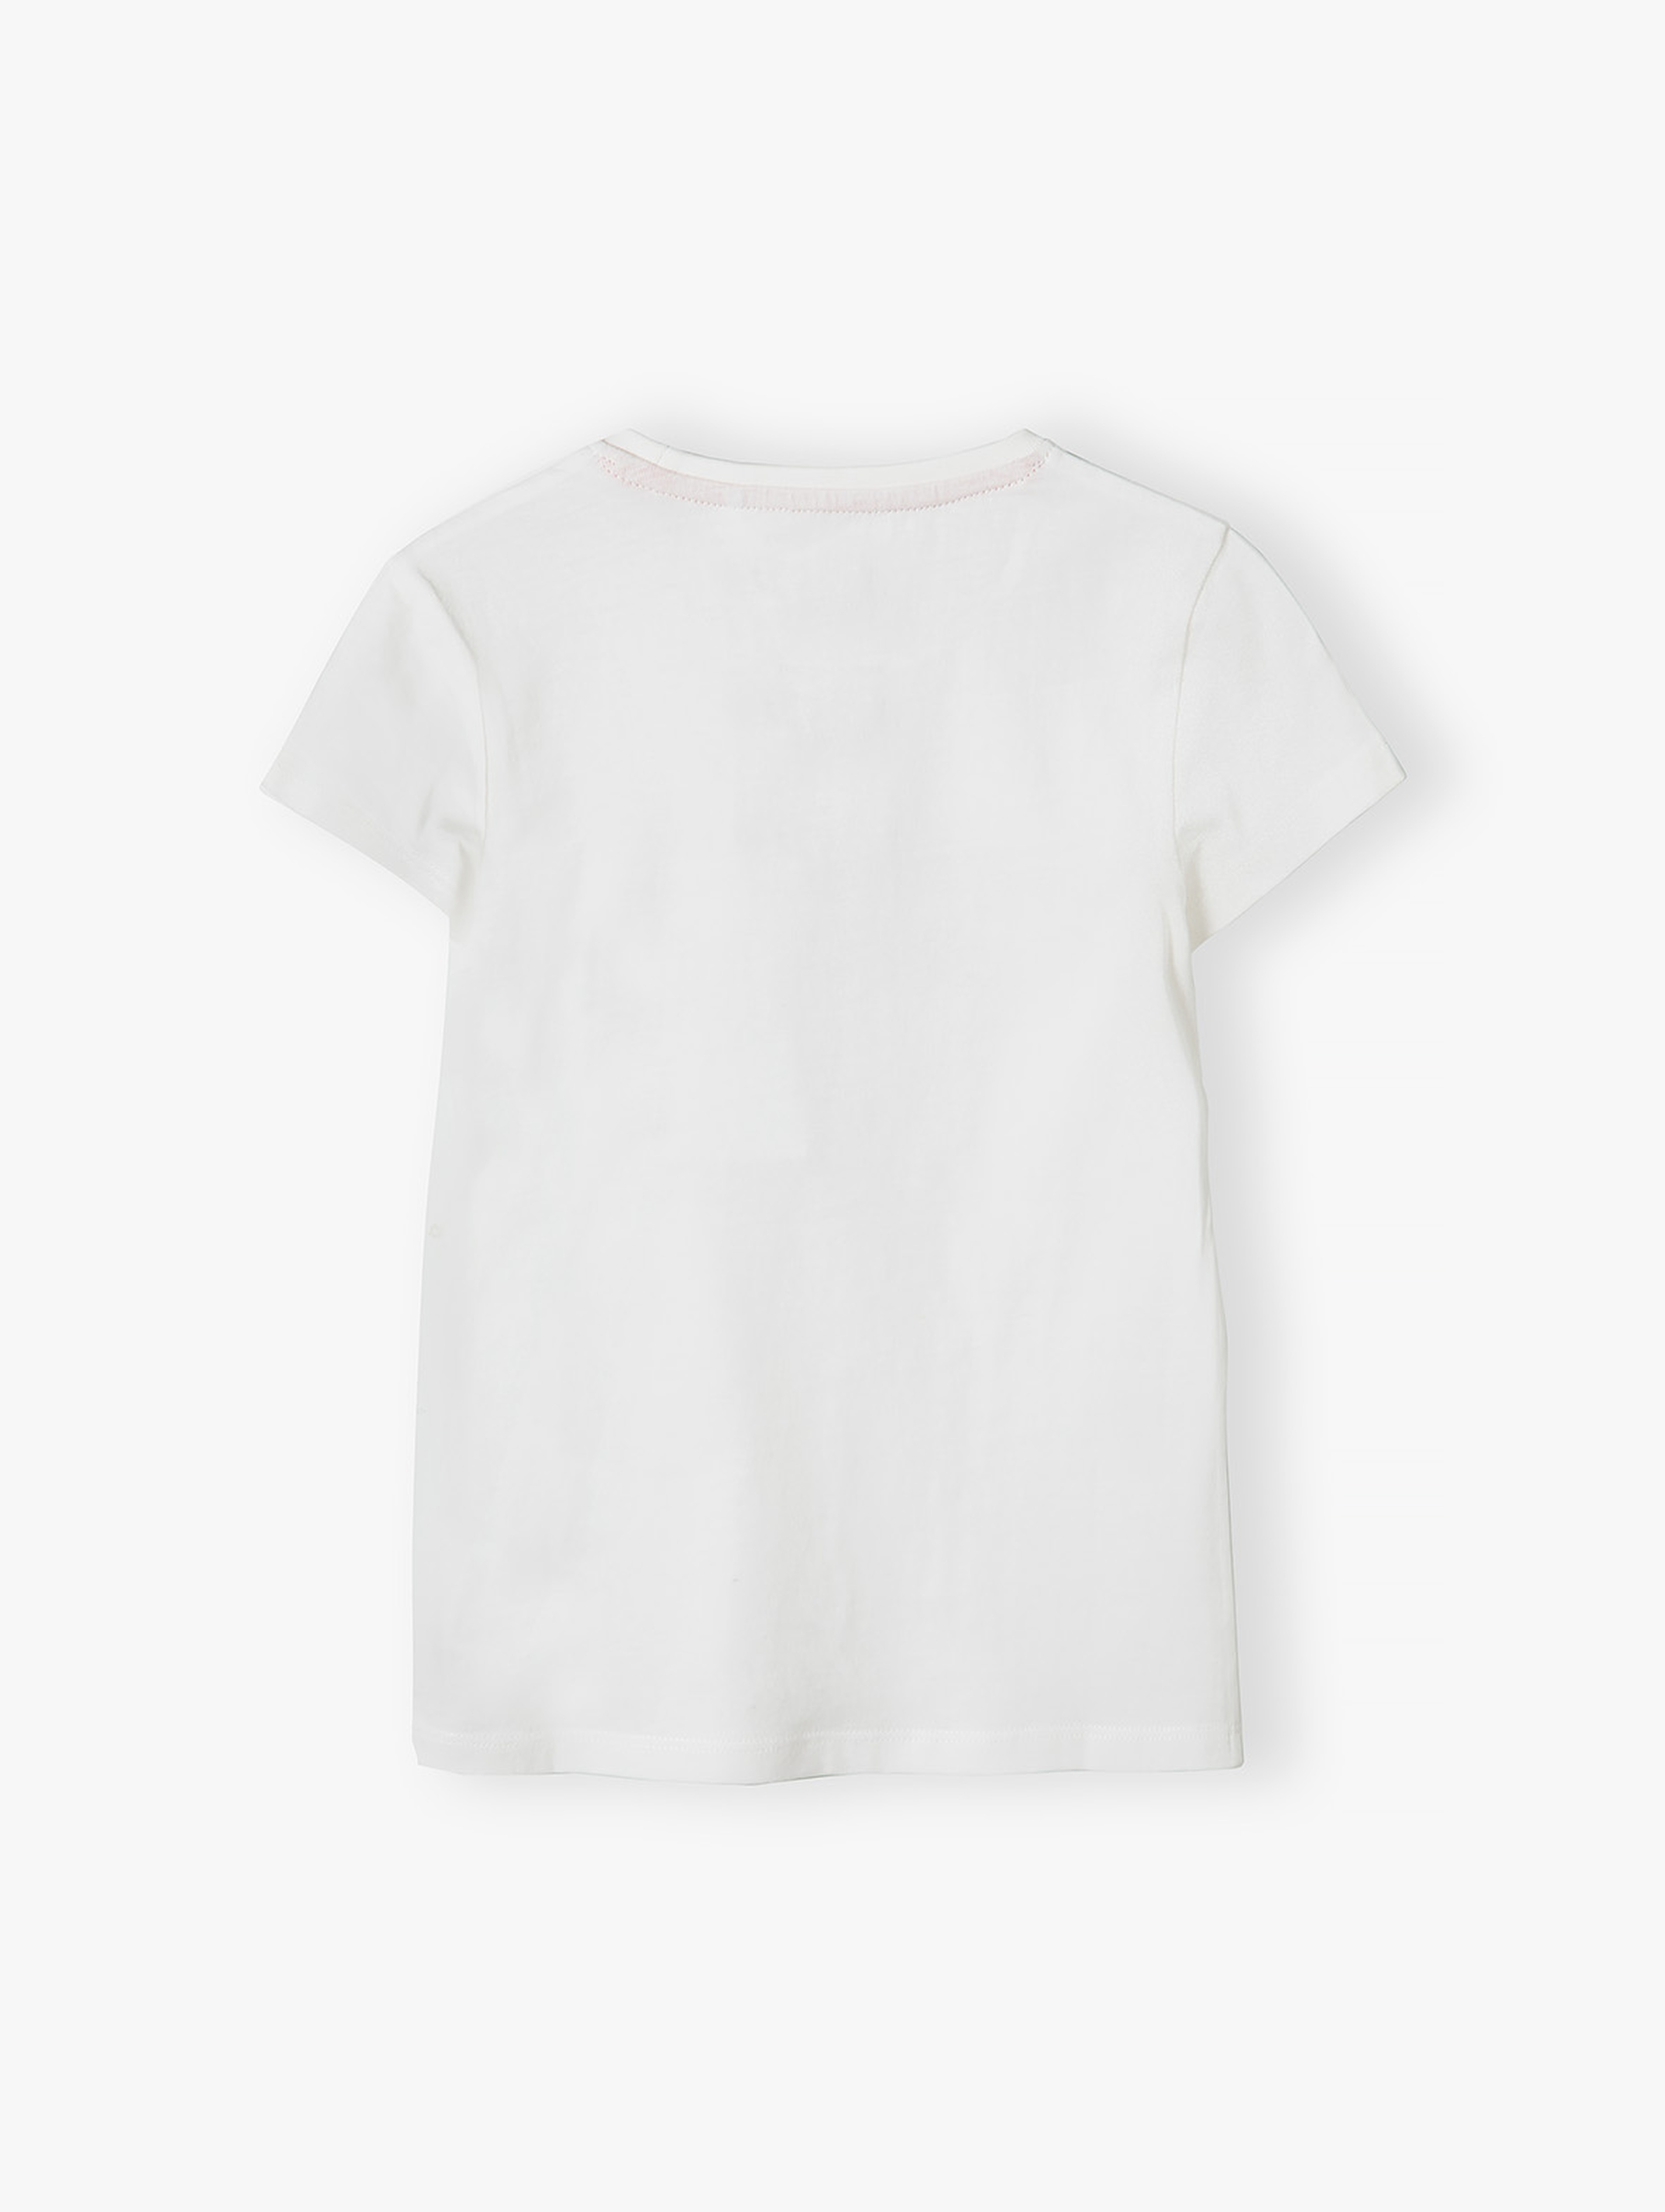 Biały t-shirt bawełniany dla dziewczynki z napisem Najlepsza siostra